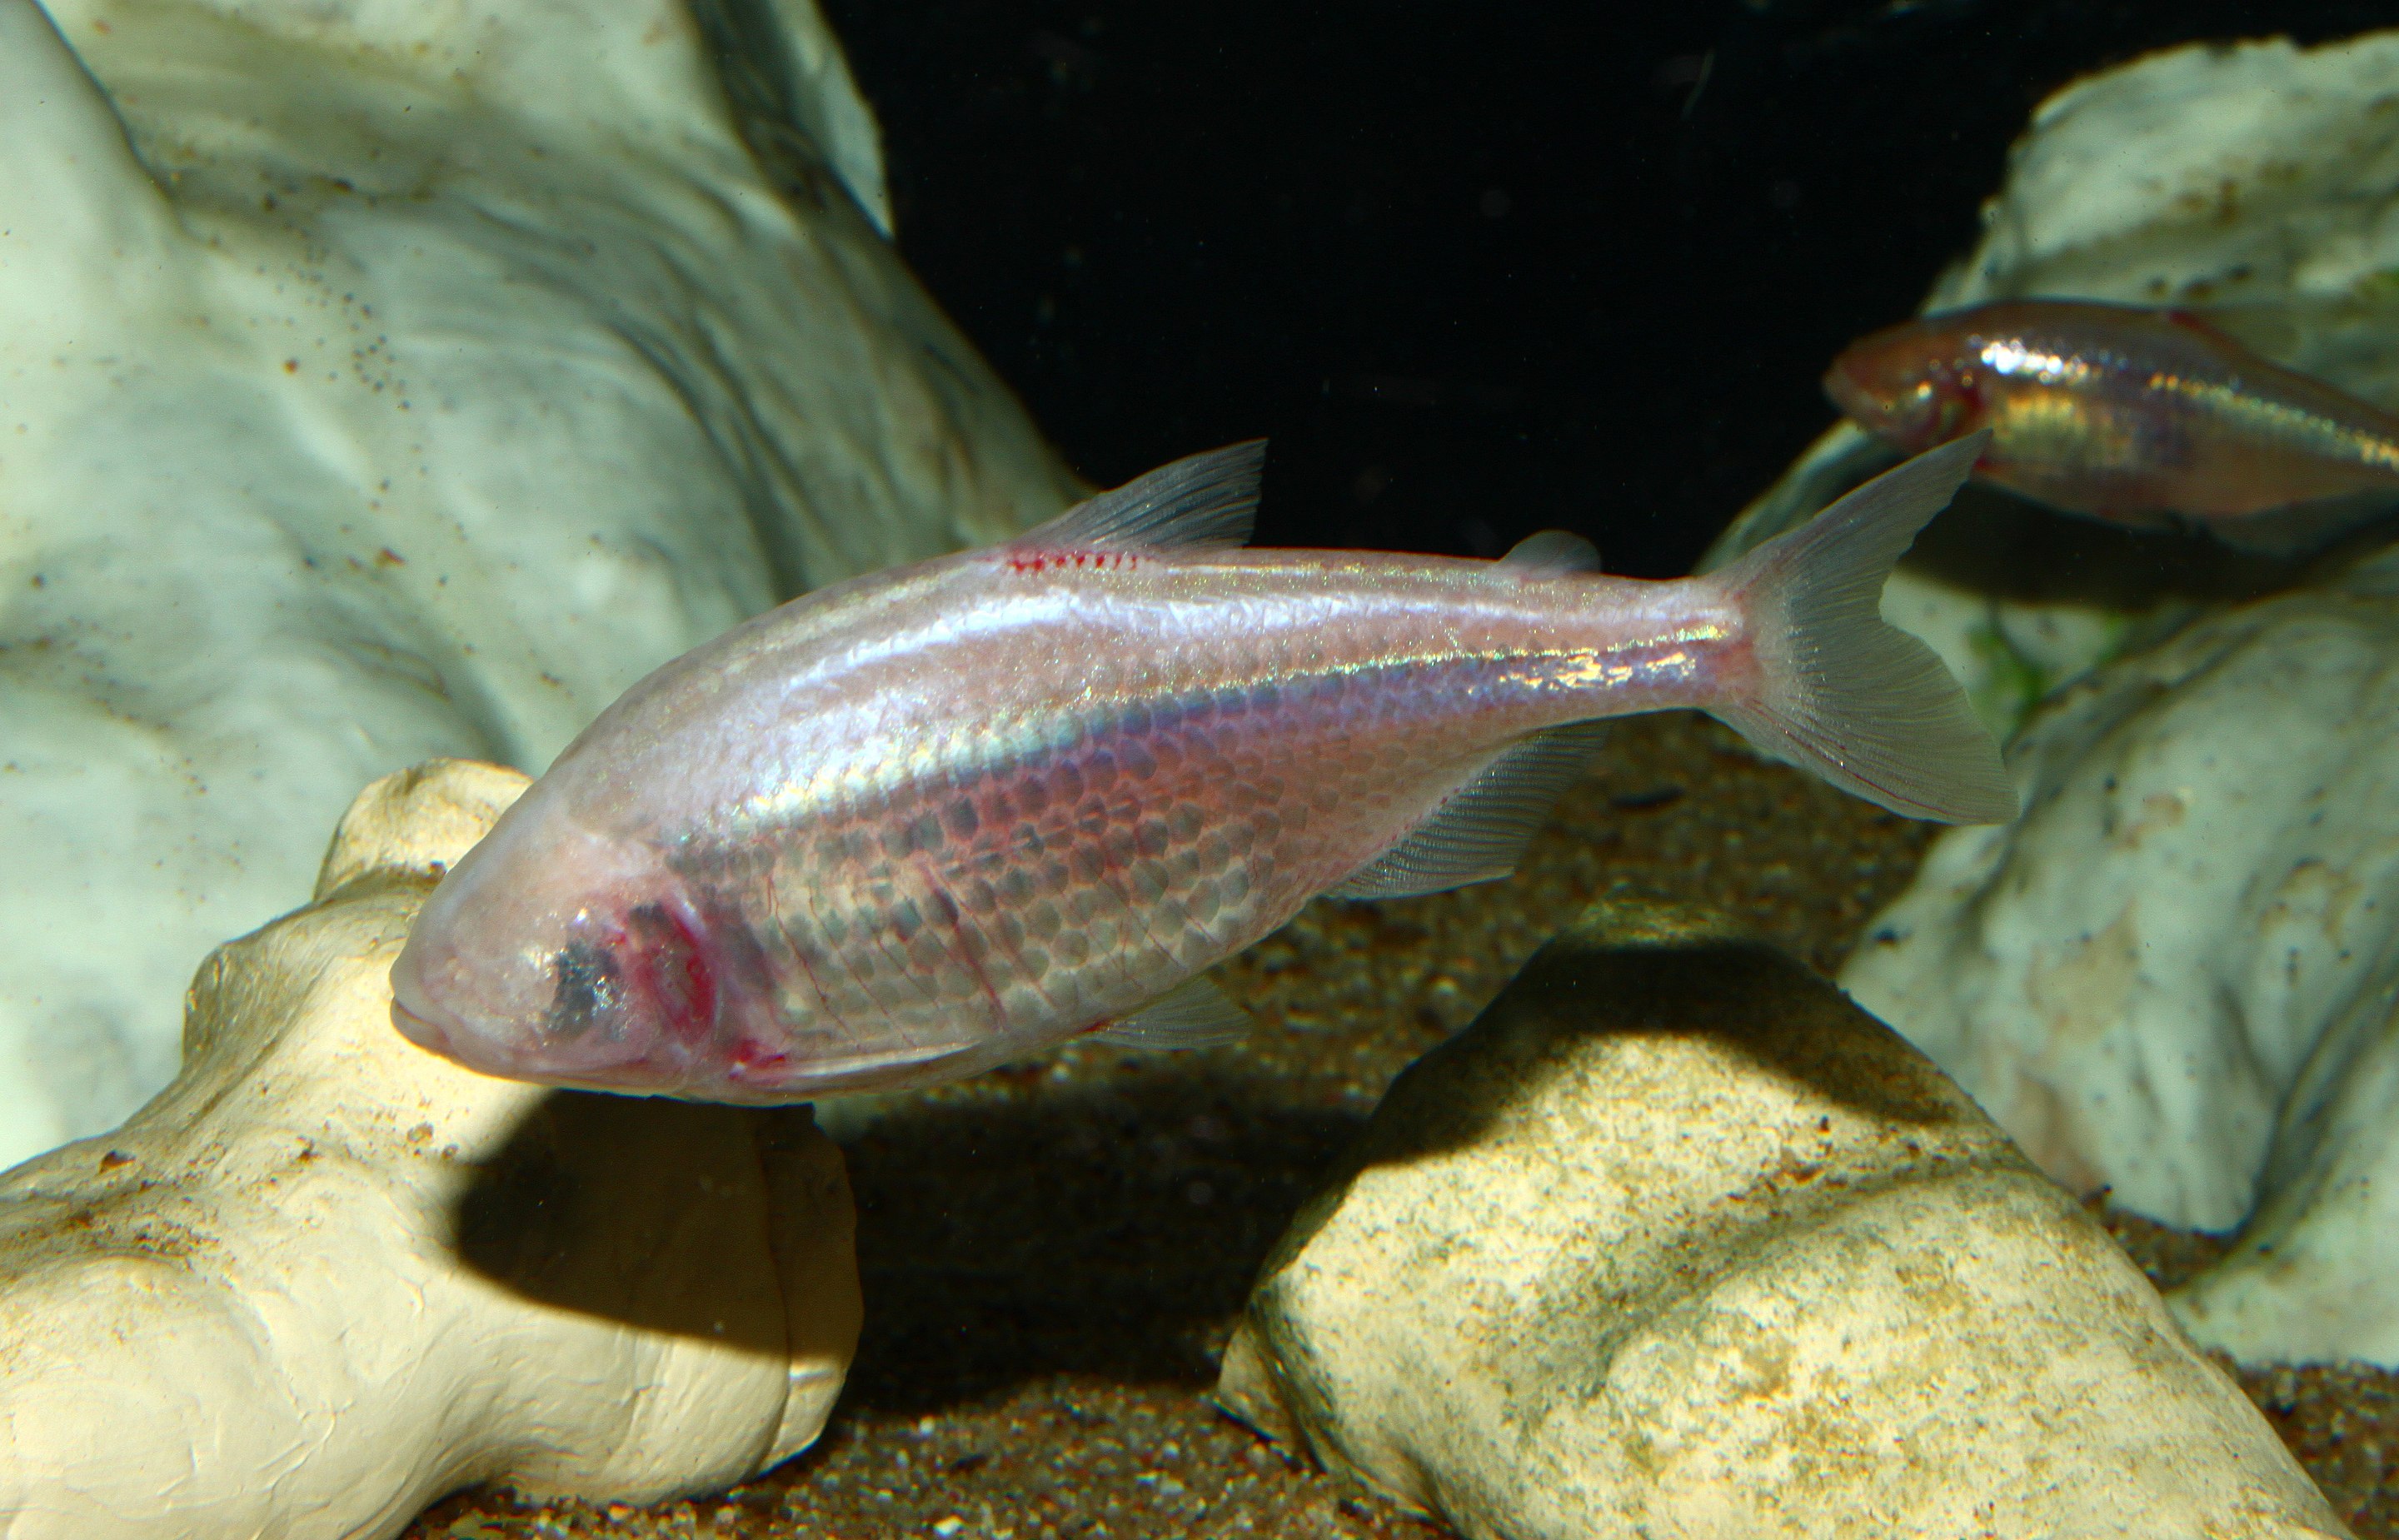 Blind cavefish